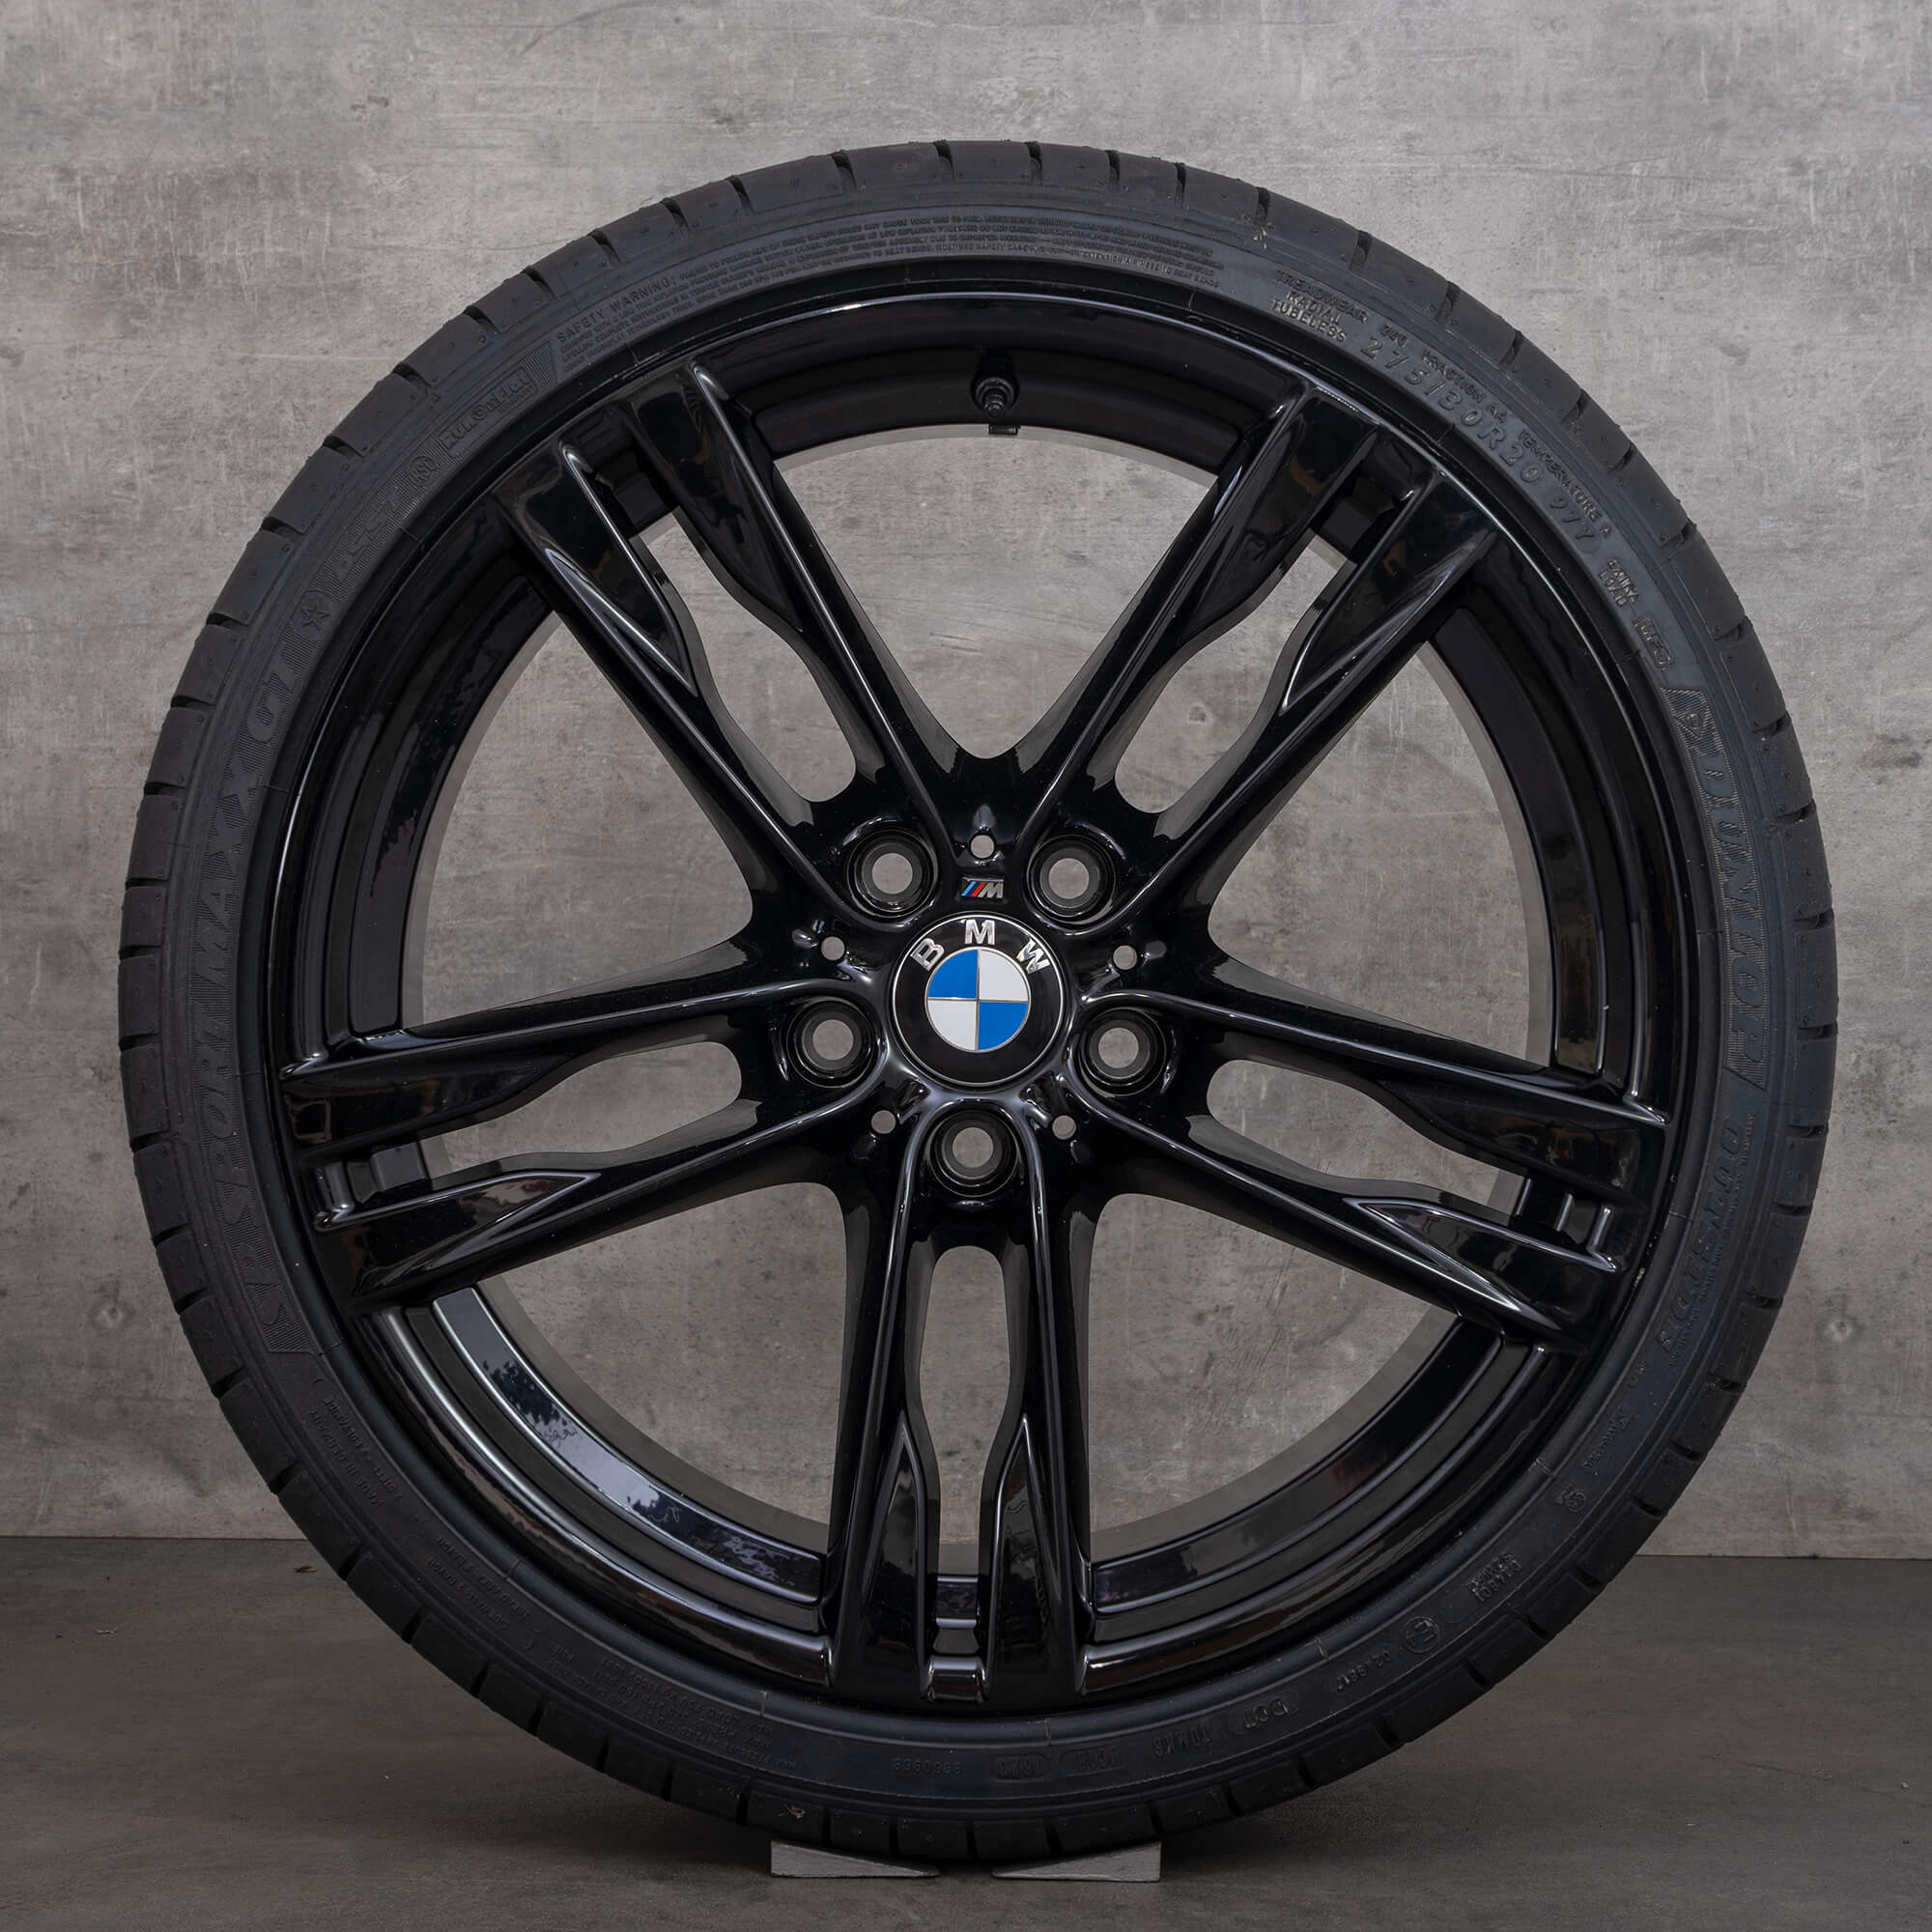 BMW série 5 F10 F11 6 F12 F13 jantes pneus de verão 20 polegadas Styling 373 M